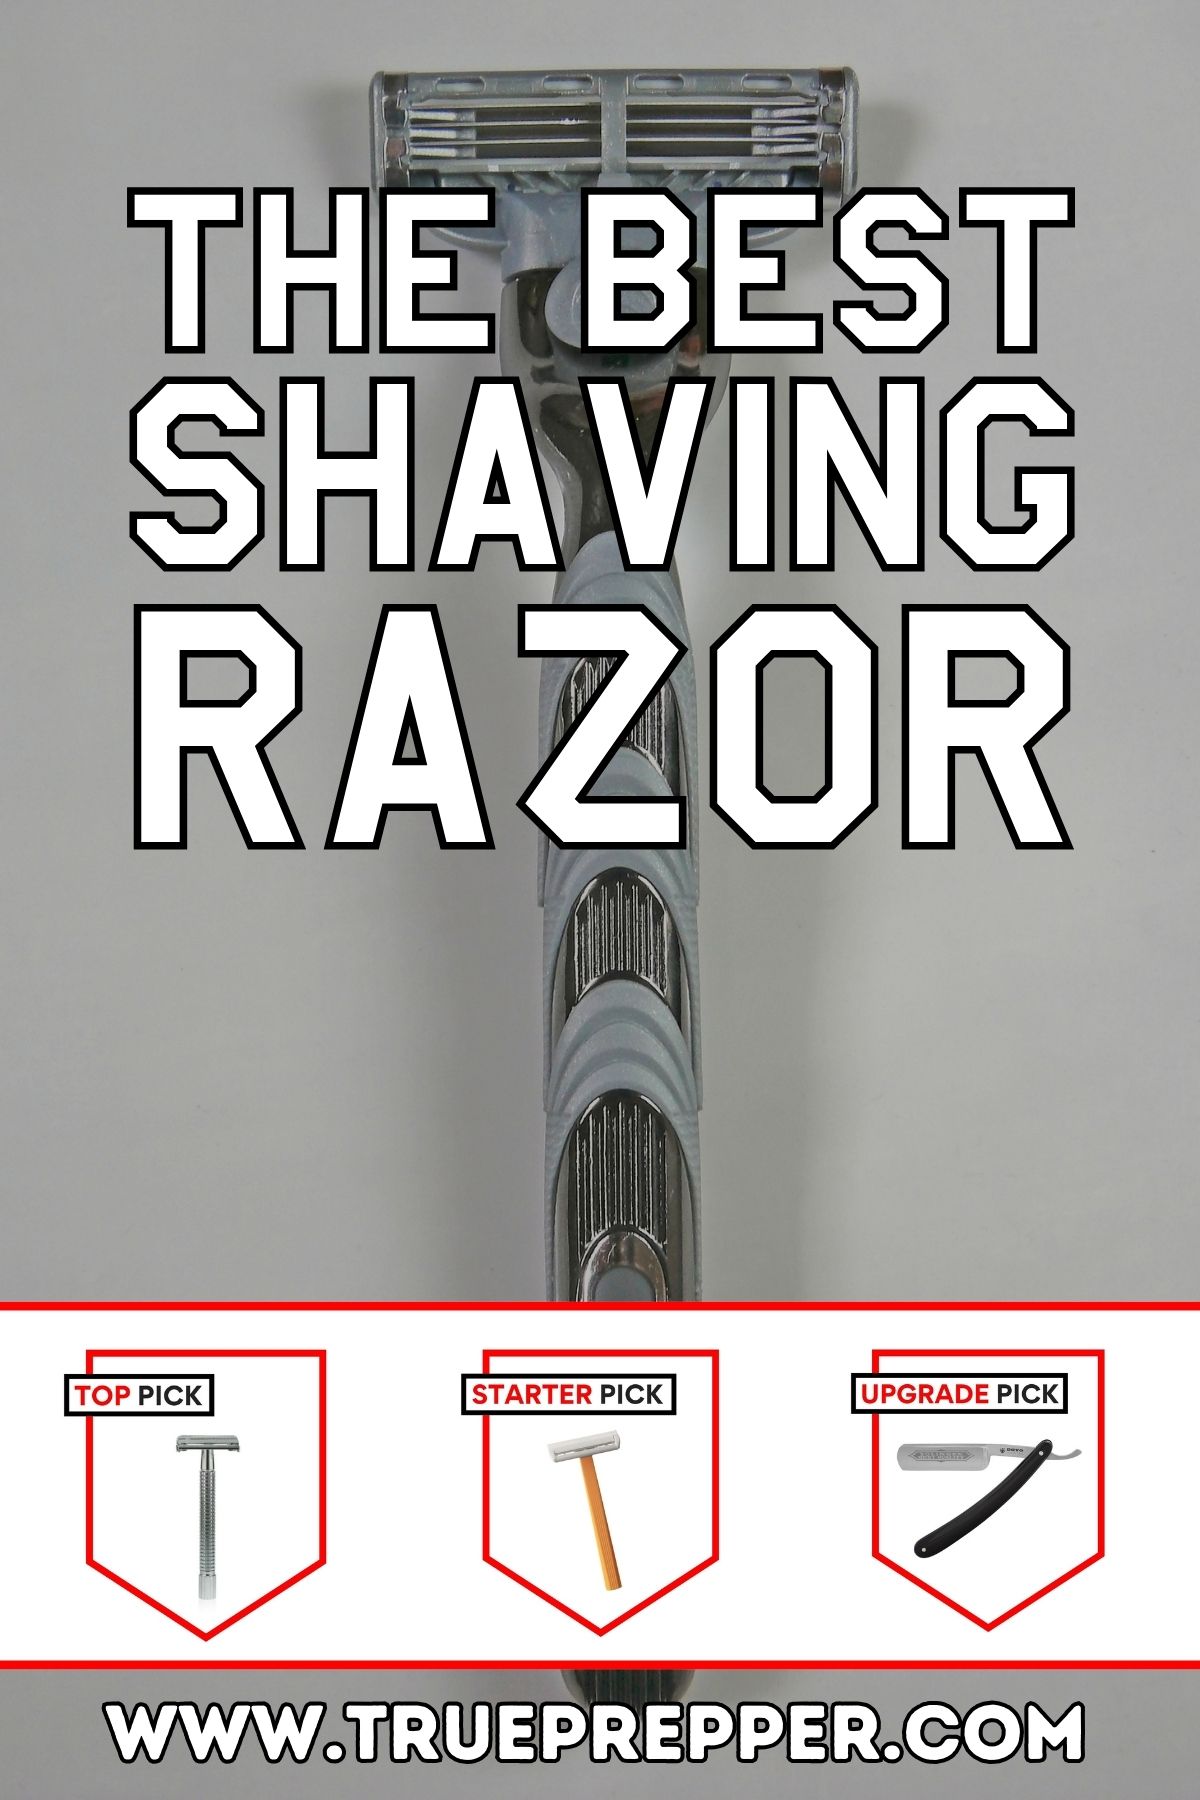 The Best Shaving Razor